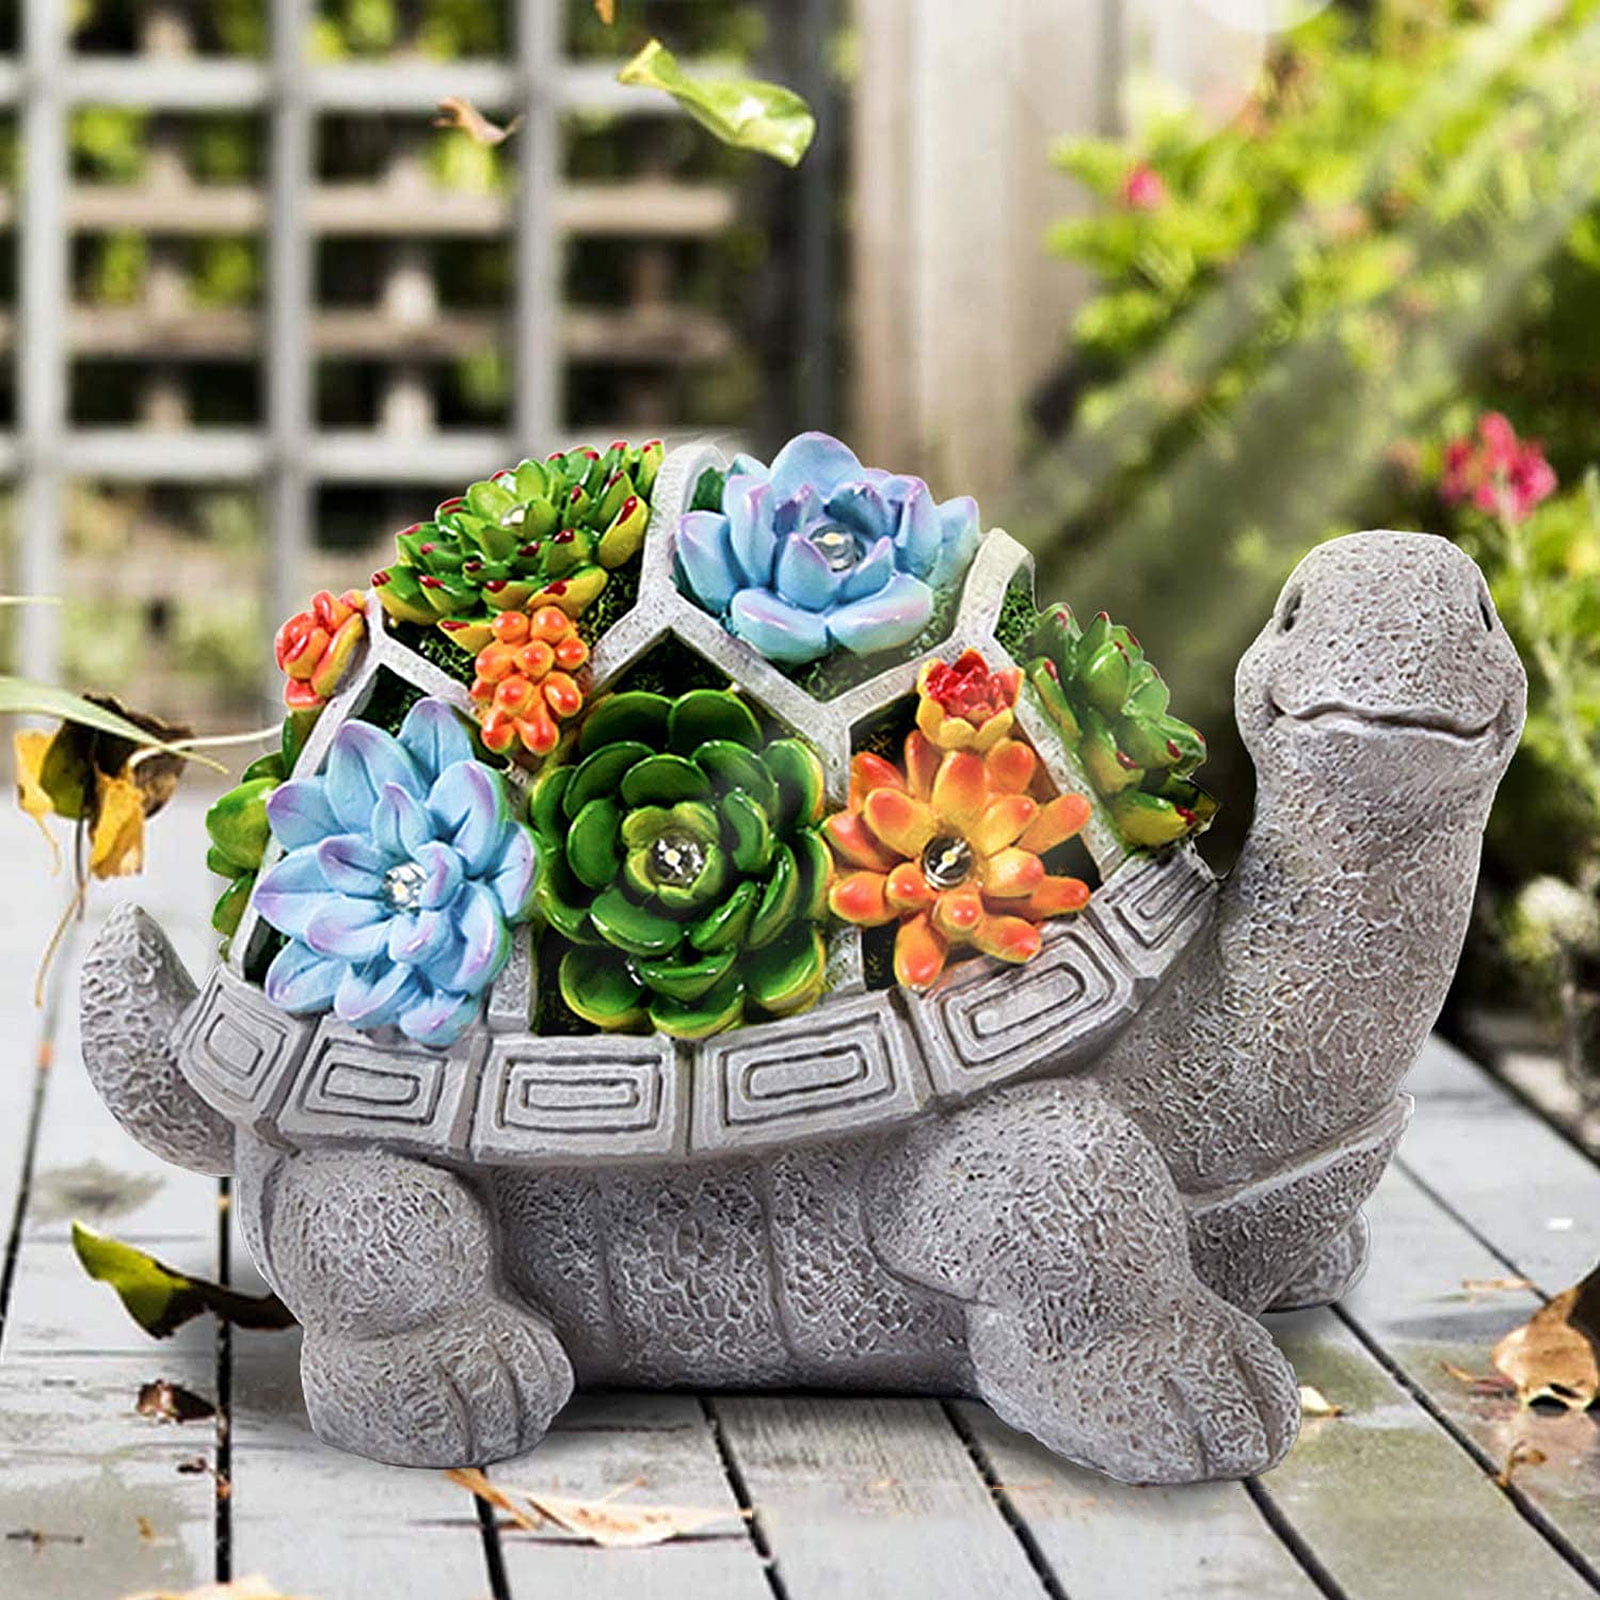 18cm Turtle Tortoise Garden Indoor or Outdoor Ornament Figurine 